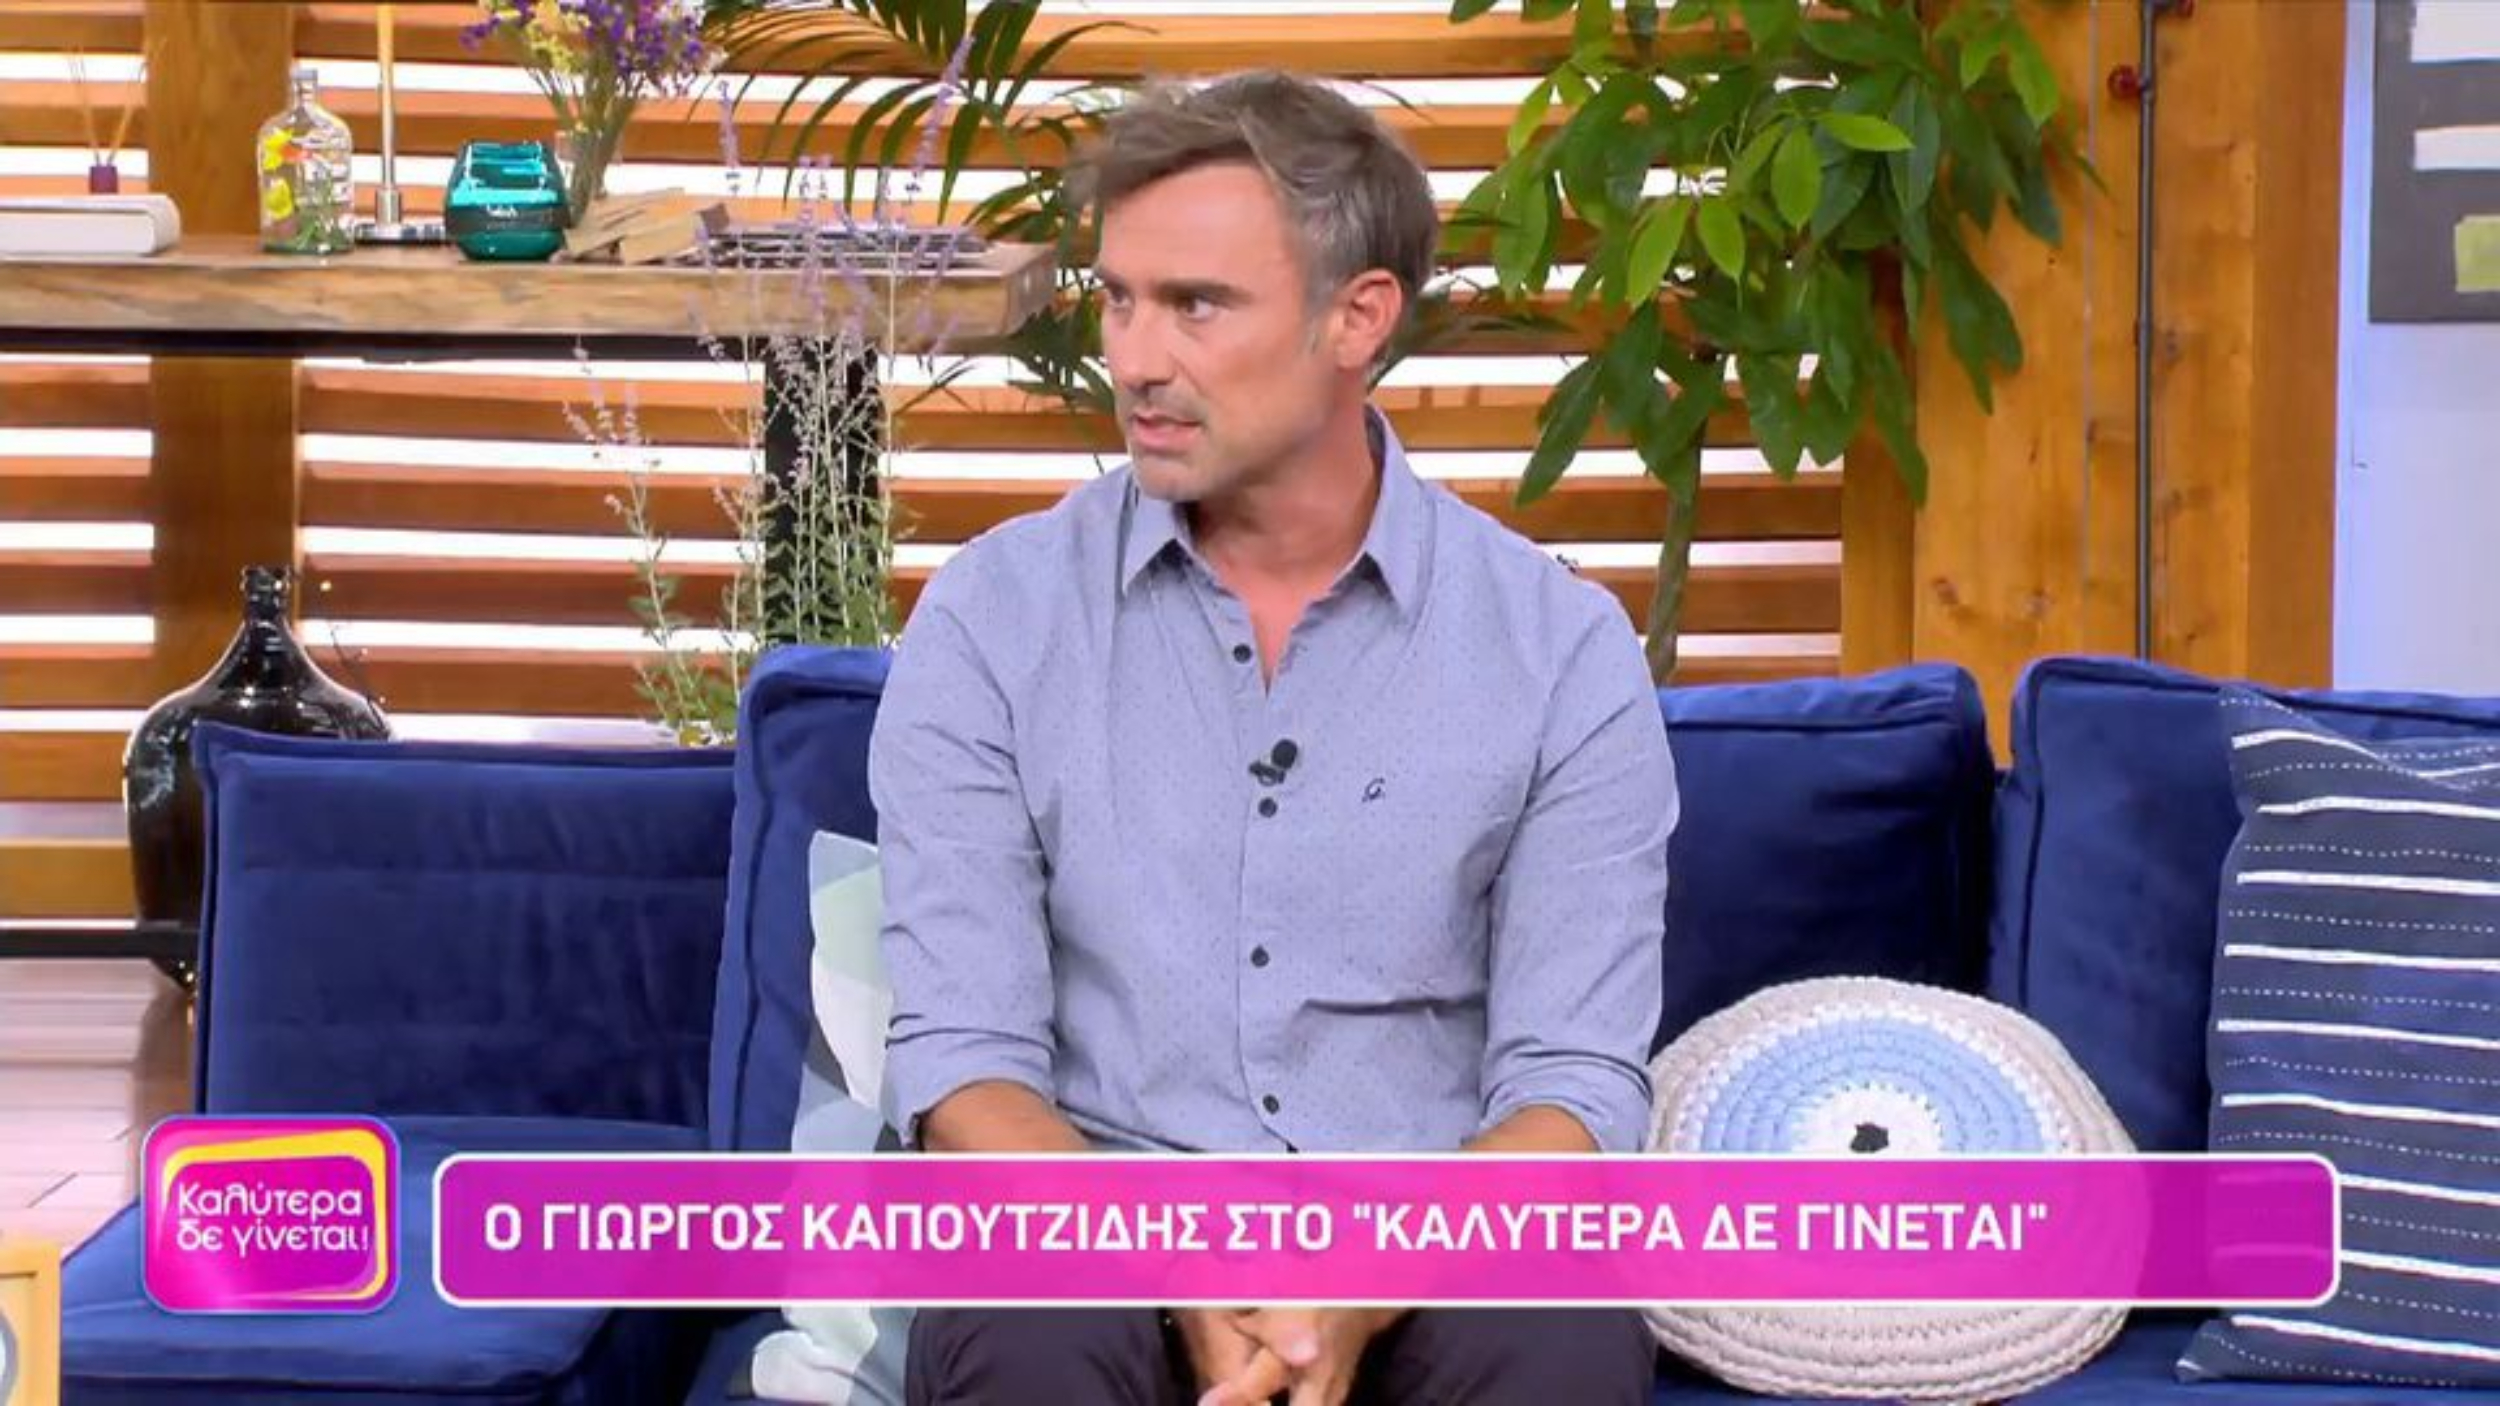 Γιώργος Καπουτζίδης: Η ατάκα γειτόνισσας όταν δεν ήθελε να γυρίσει στην Αθήνα -«Μη γυρίσεις, δεν τους έχεις ανάγκη, εκείνοι σε έχουν»